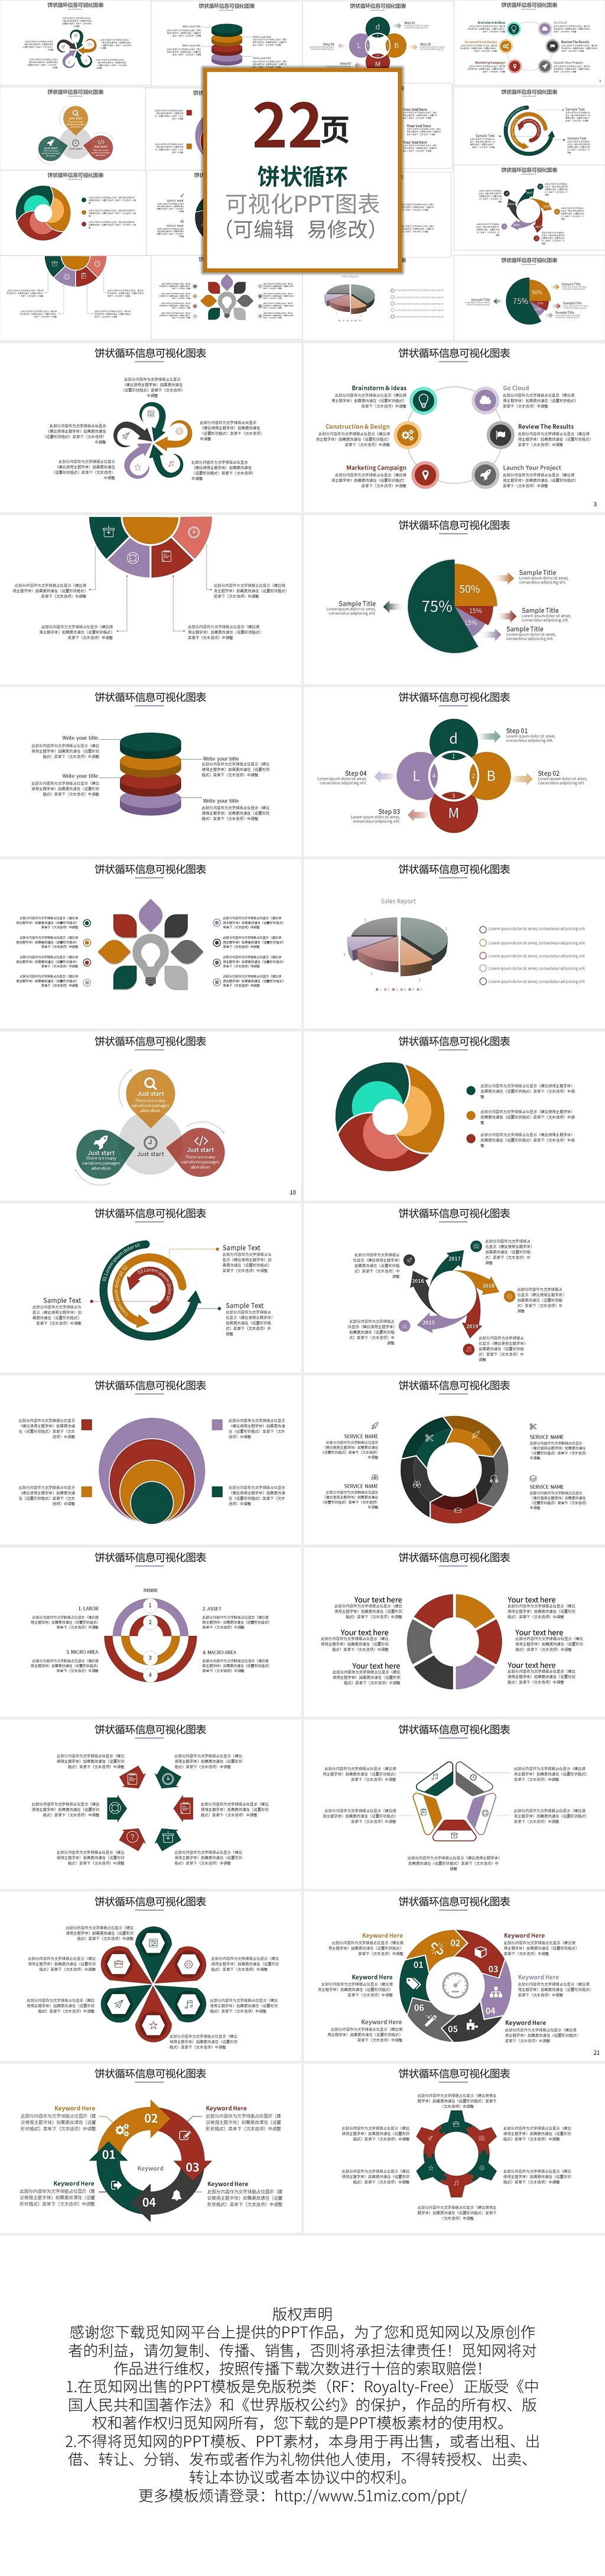 彩色饼状循环图信息可视化图表PPT模板宣传PPT动态PPT循环关系图表